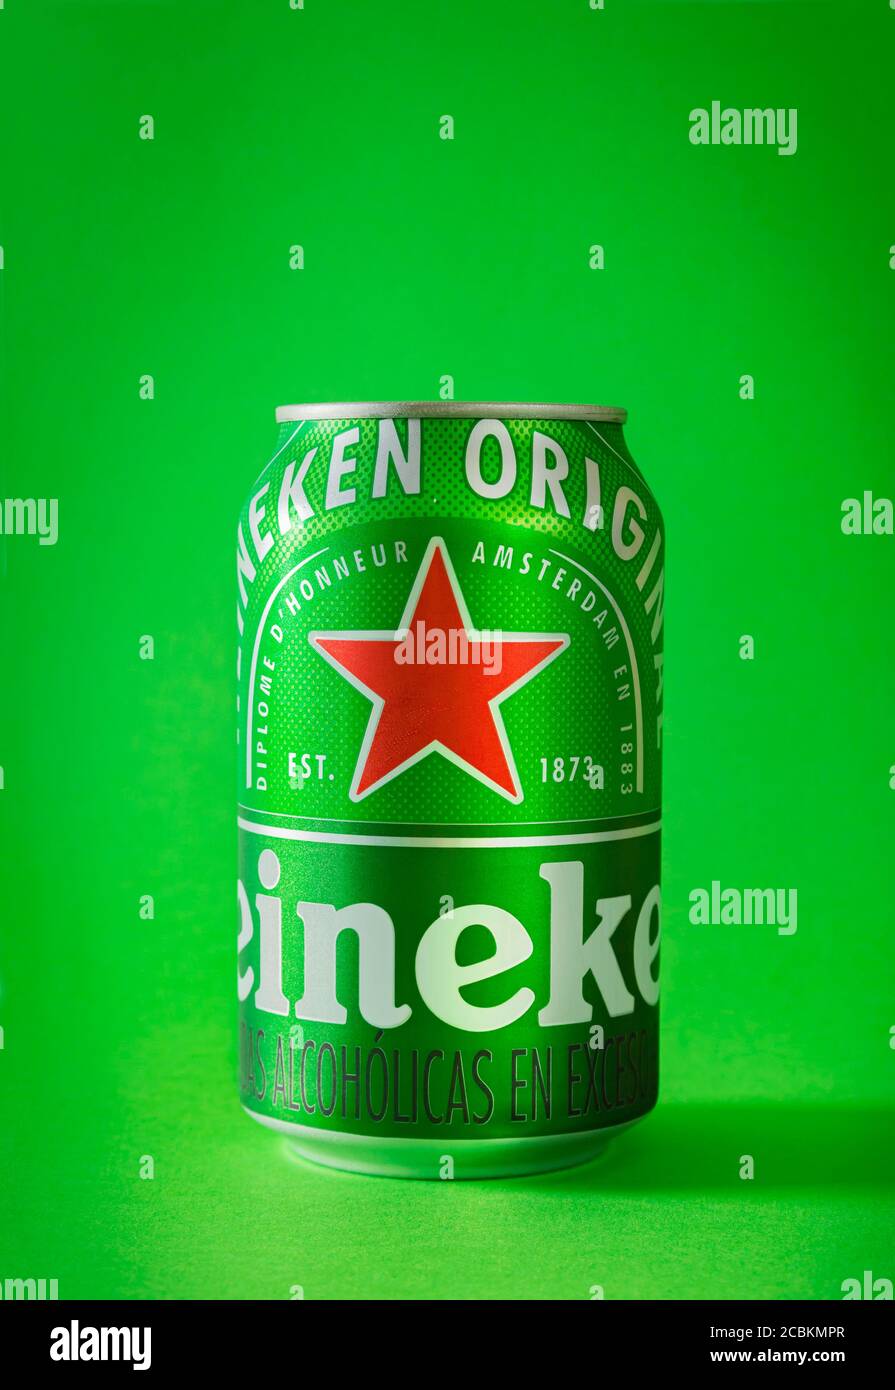 Albero Di Natale Heineken.Bottiglia Di Birra Verde Con Stella Rossa Immagini E Fotos Stock Alamy